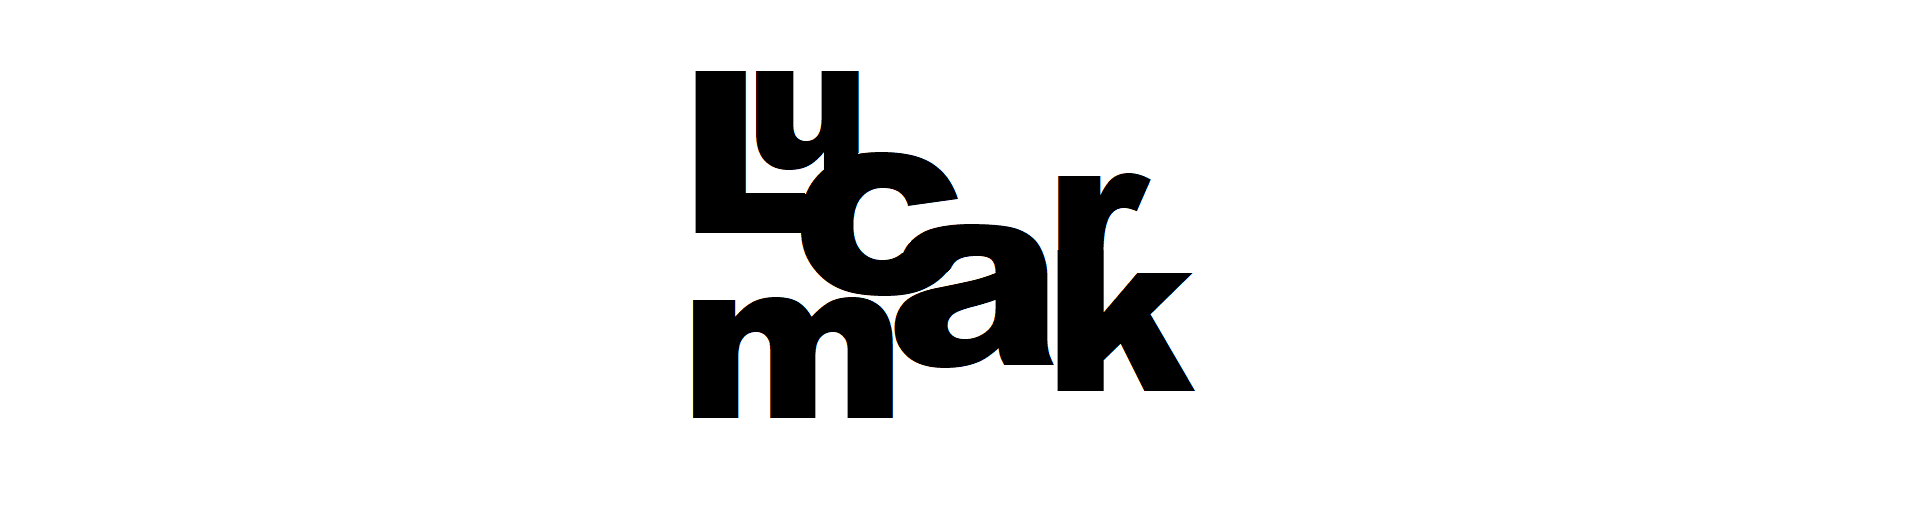 Lucmark